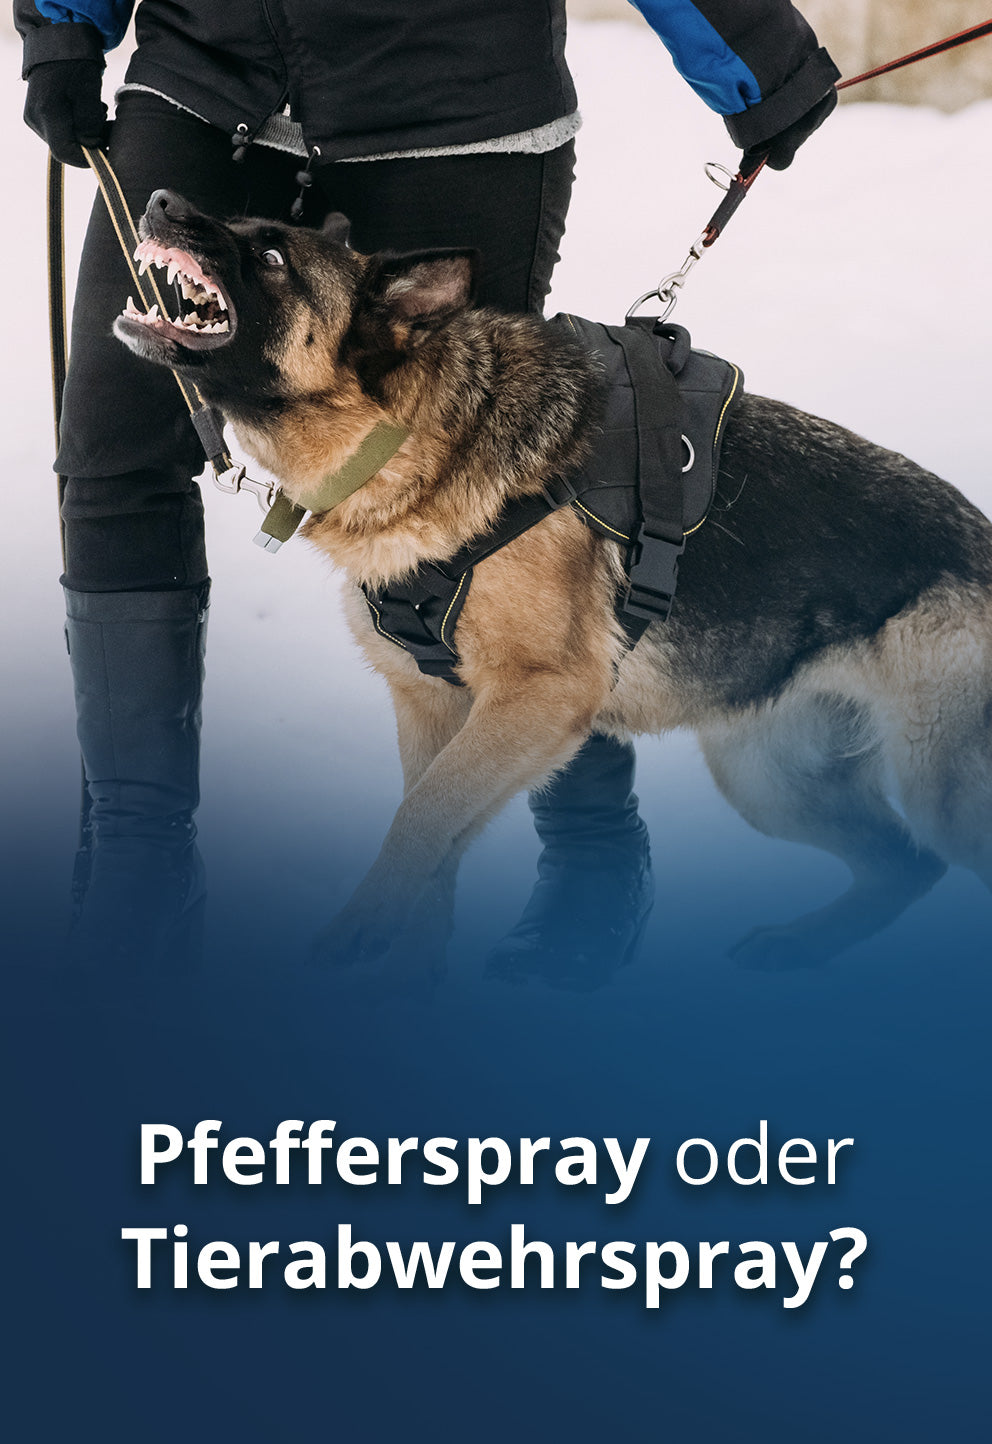 Pfefferspray oder Tierabwehrspray - was ist der Unterschied?